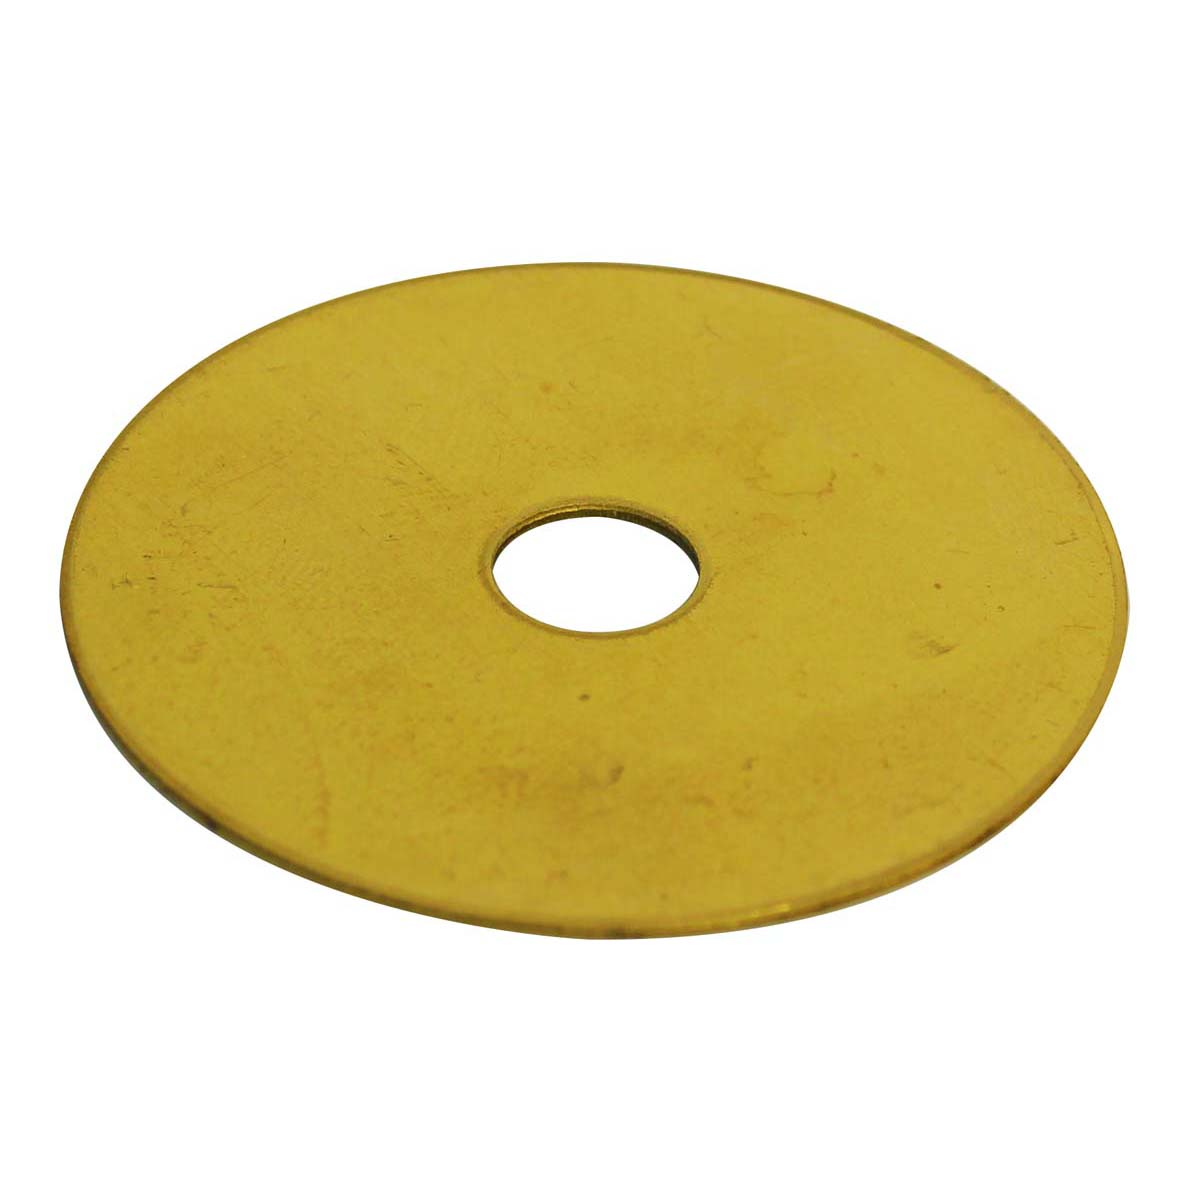 Wilson Plunger Brass Washer Plates